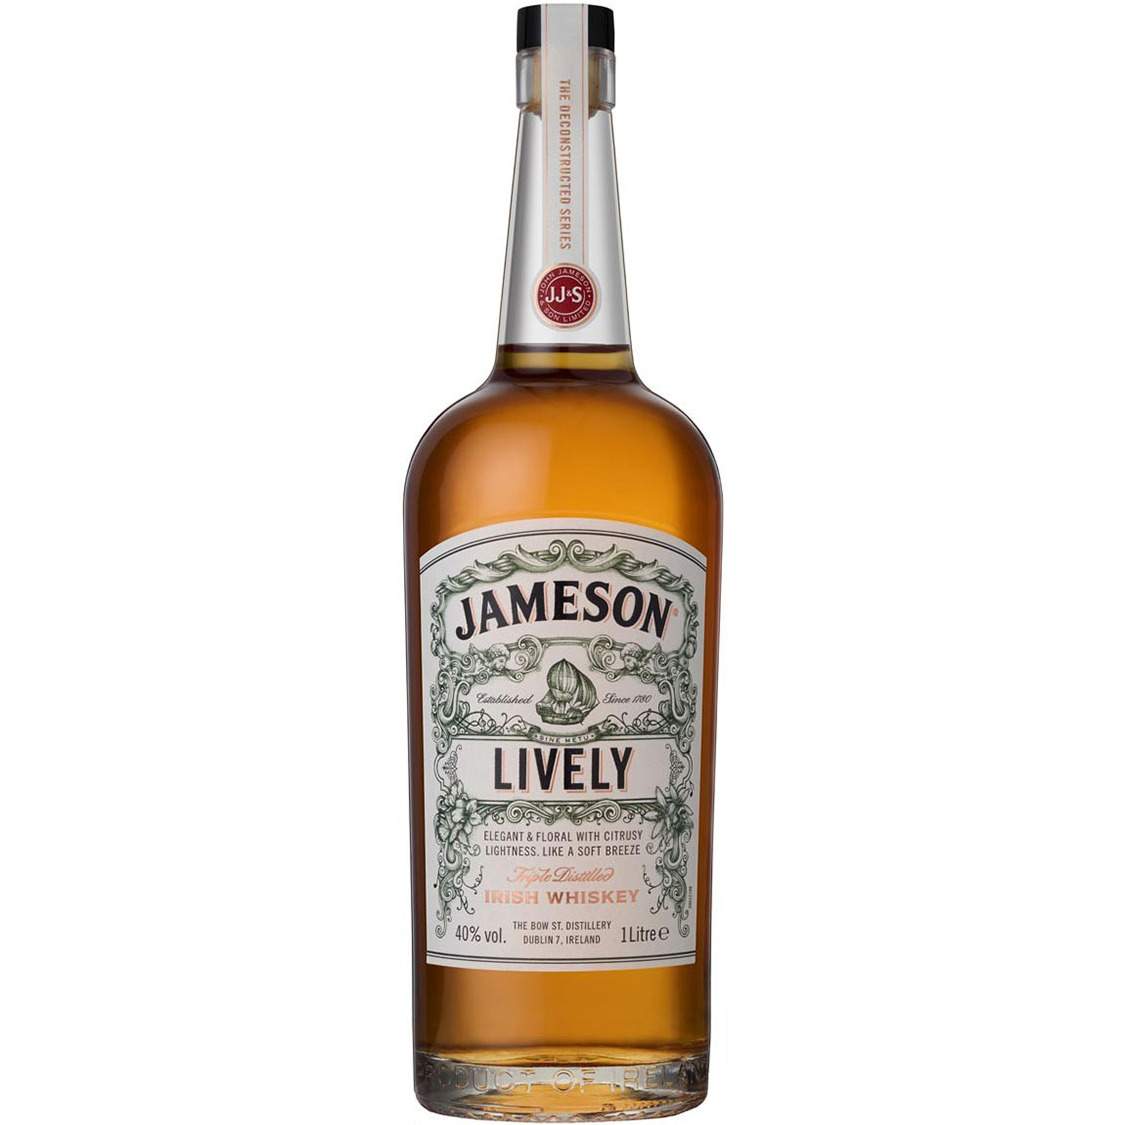 Jameson - Lively 1 liter